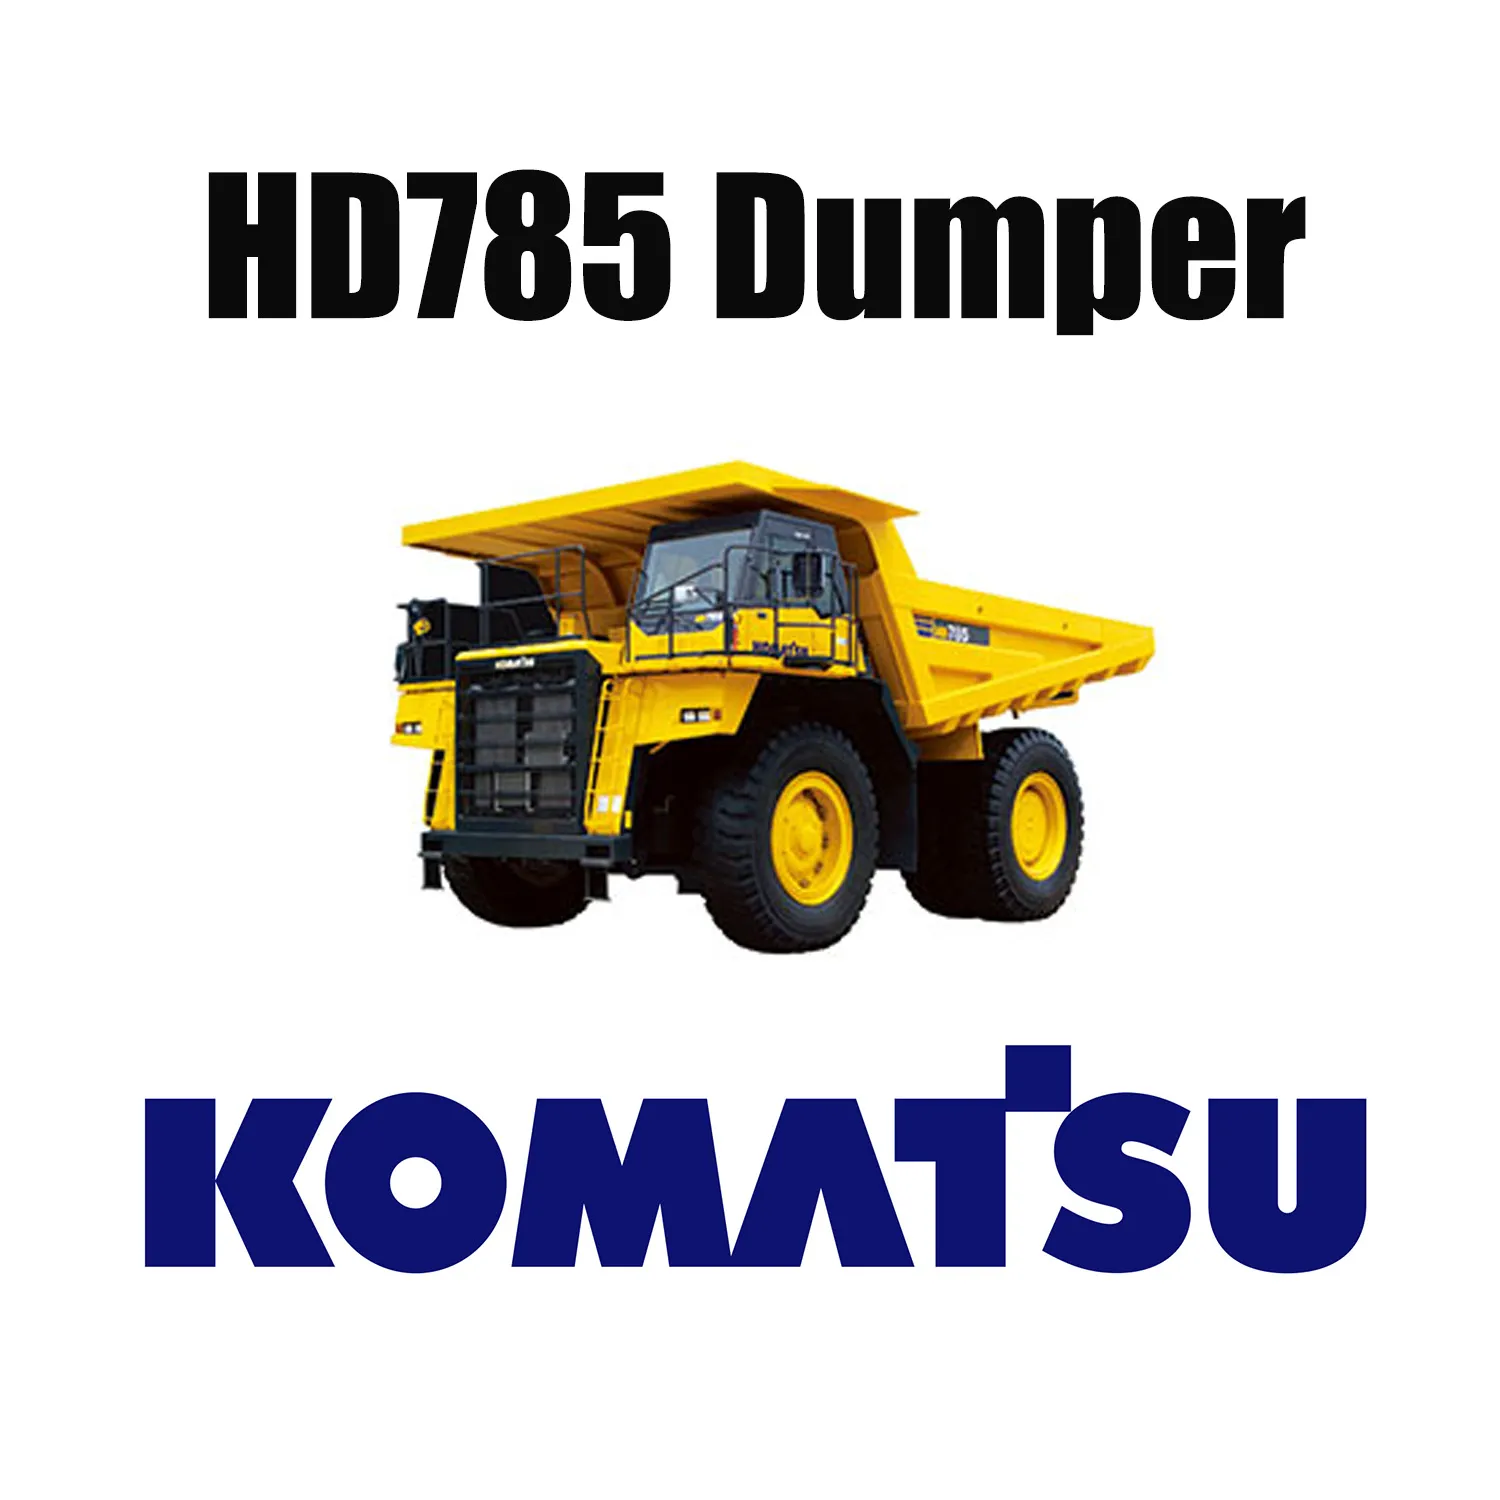 Pneus OTR de spécialité minière robuste 27.00R49 pour camion à benne basculante KOMATSU HD785